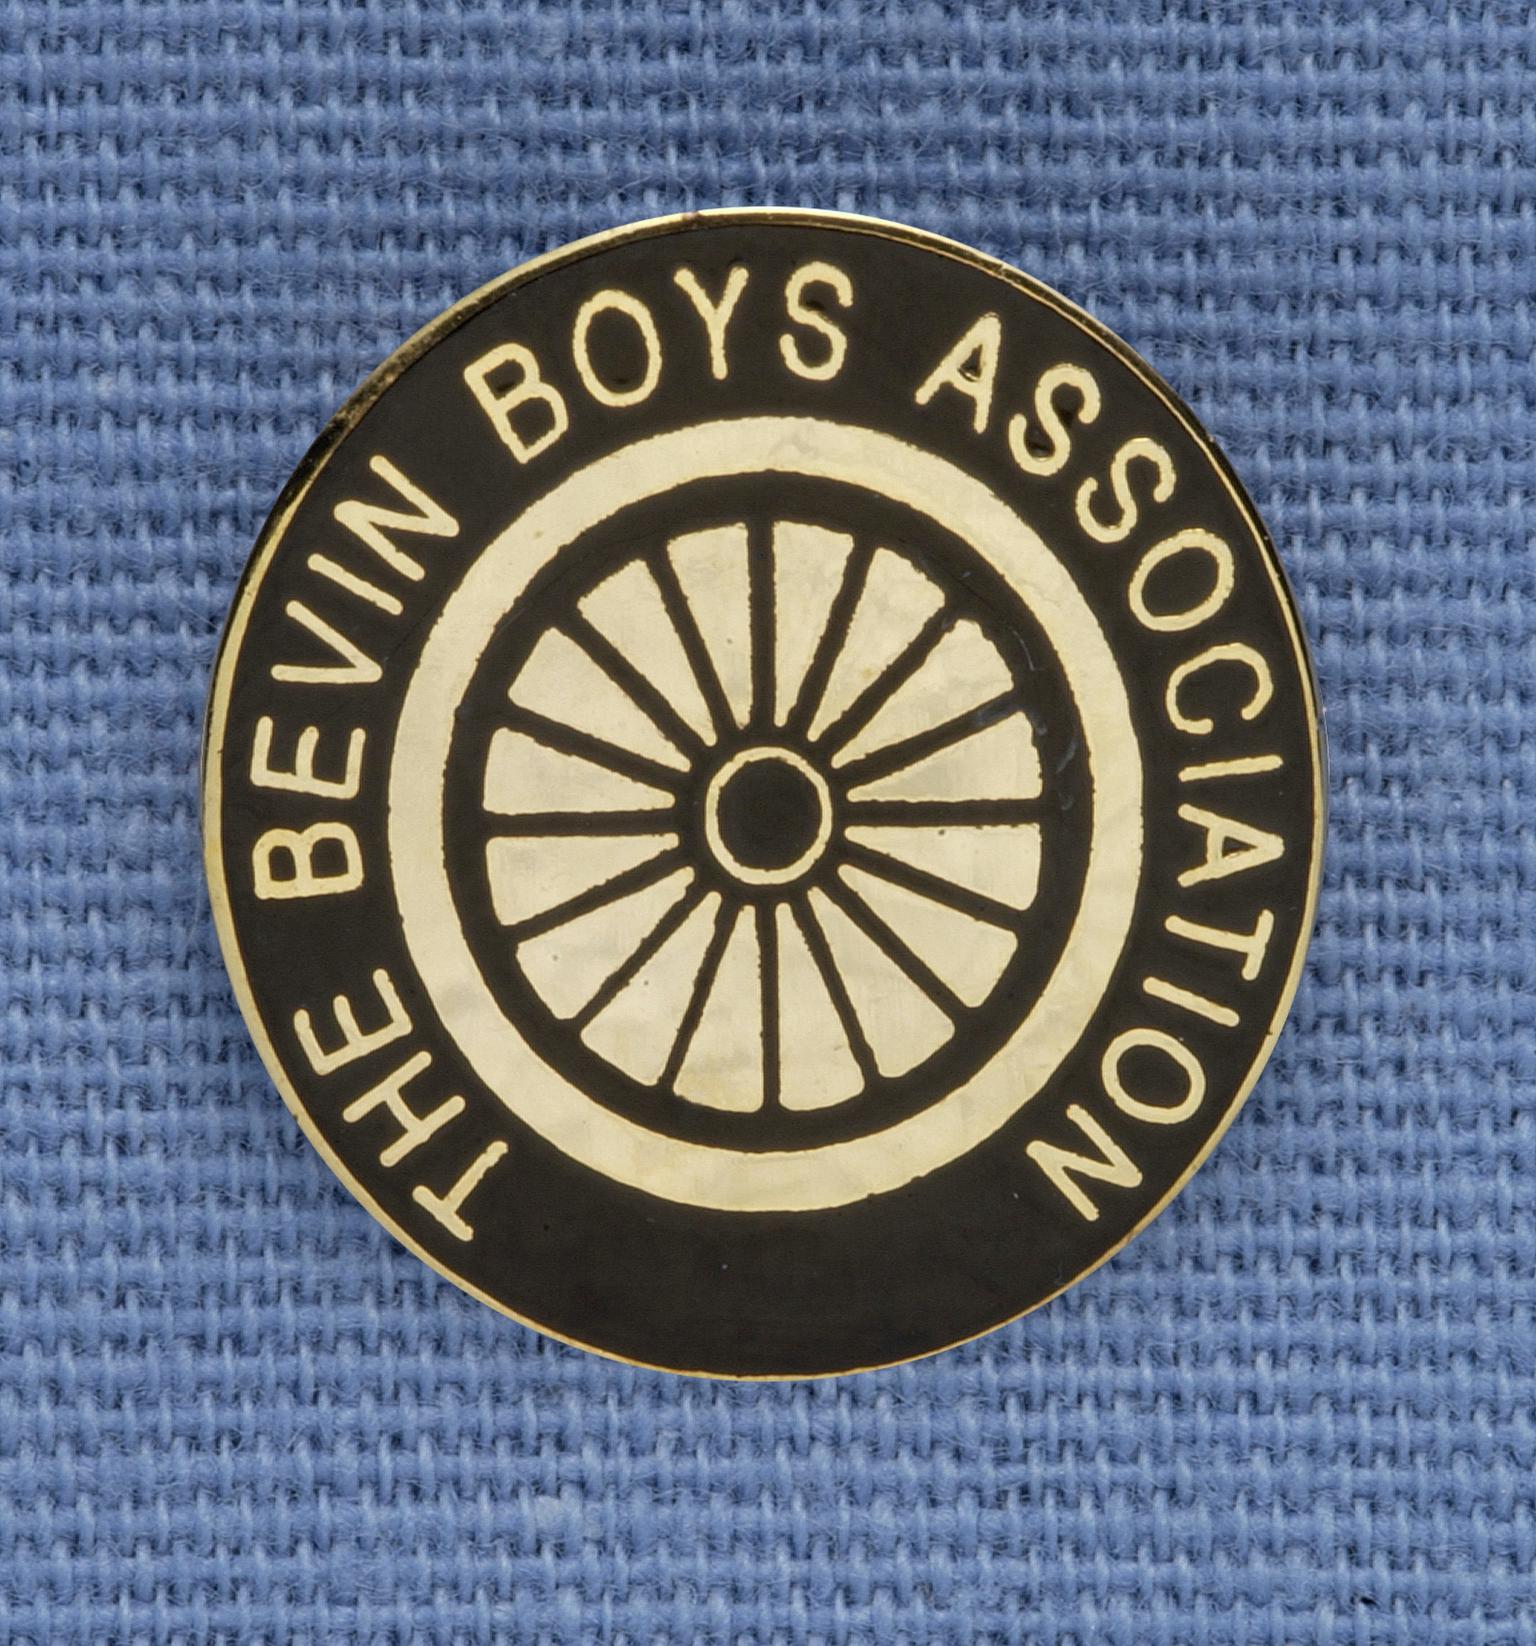 Bevin Boys Association, badge